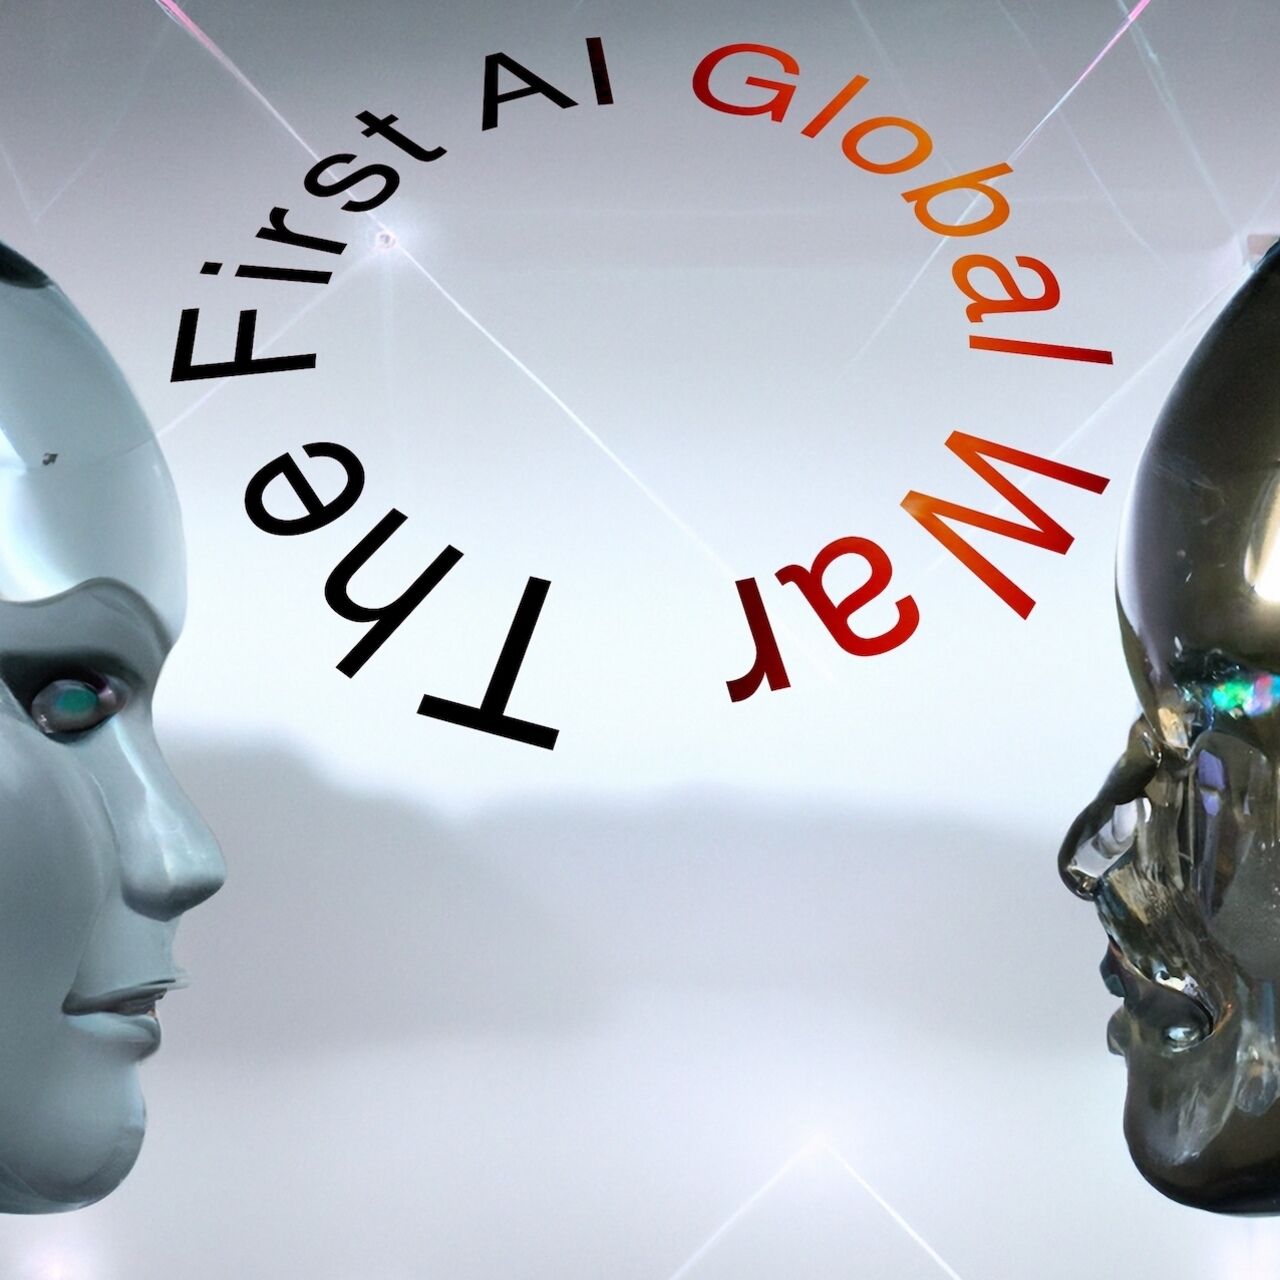 Intelligenza Artificiale: una rappresentazione artistica della “First AI Global War”, letteralmente la “Prima Guerra Mondiale dell’Intelligenza Artificiale”, creata dall’autore dell’articolo con Dall-E